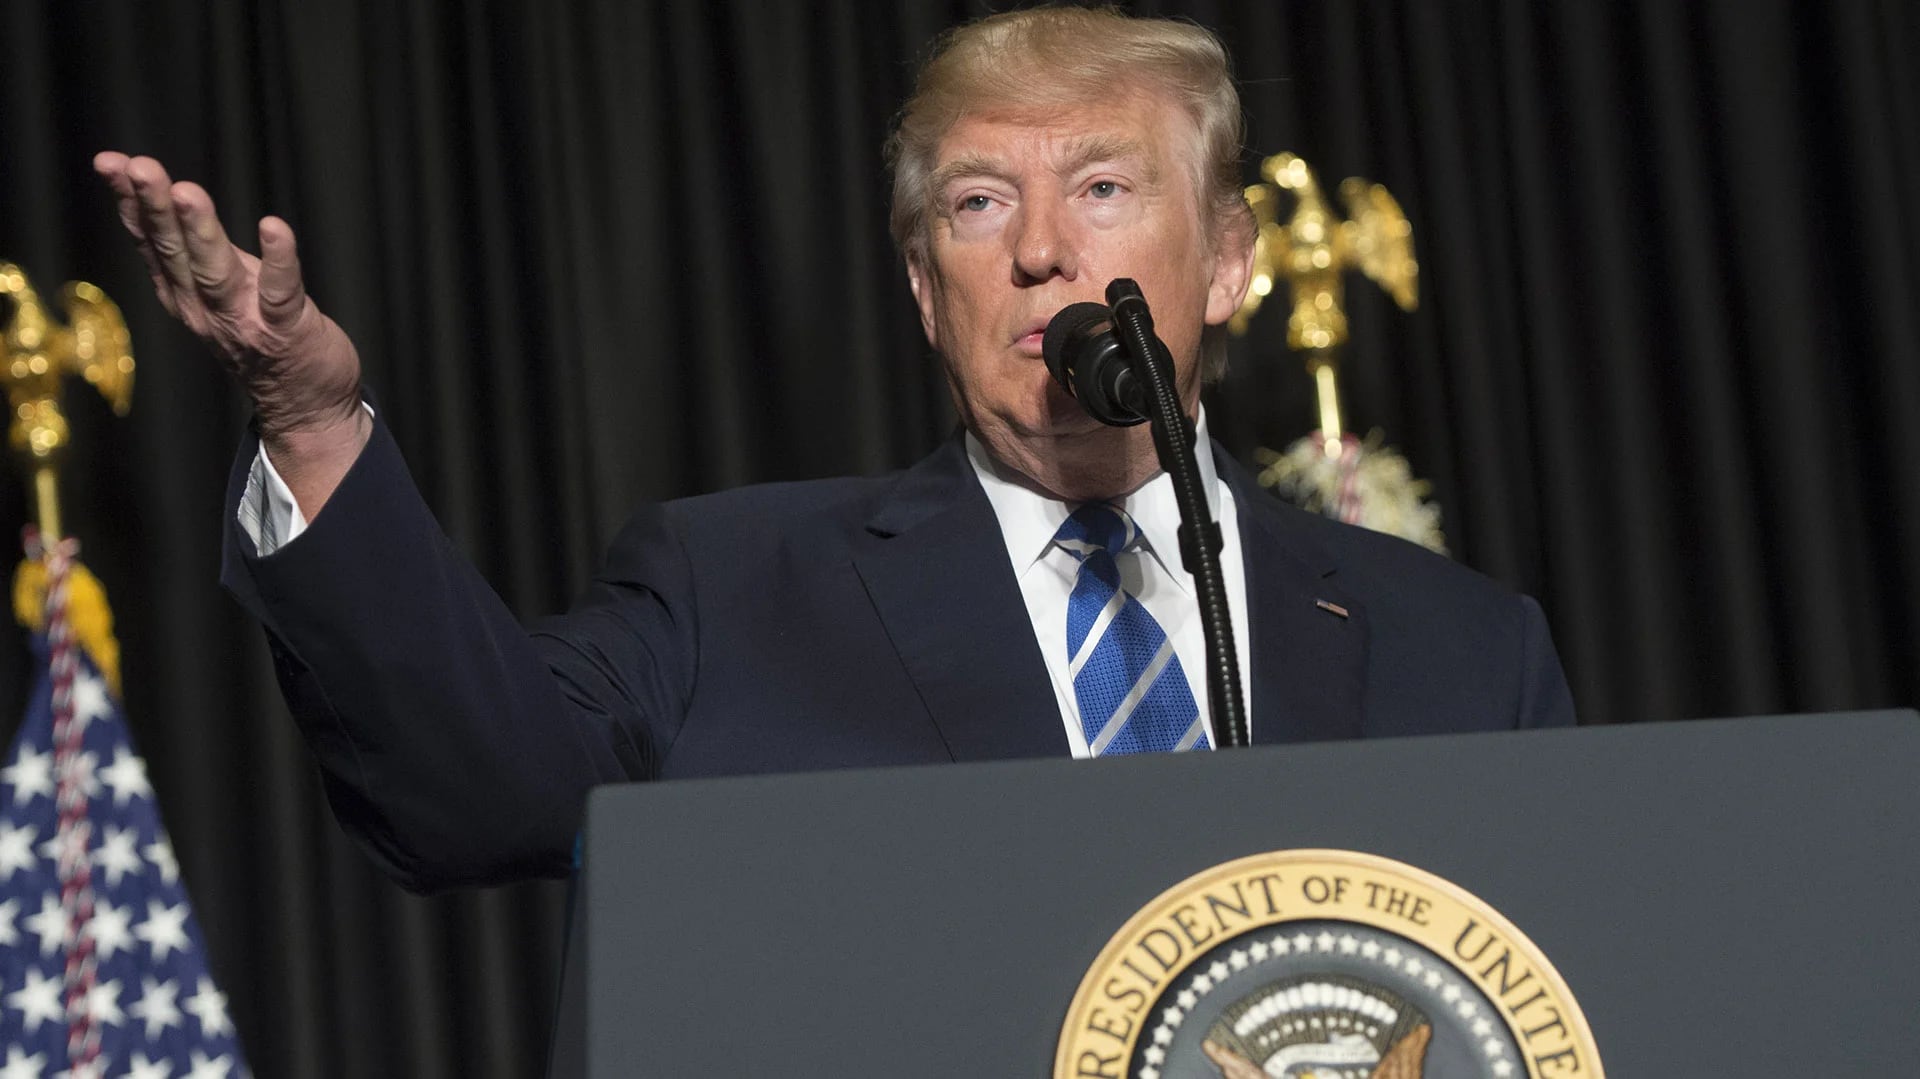 Donald Trump llegó a la presidencia con fuertes críticas al acuerdo nuclear firmado con Irán, aunque su modificación o derogación aún no ha entrado en la agenda (AFP)